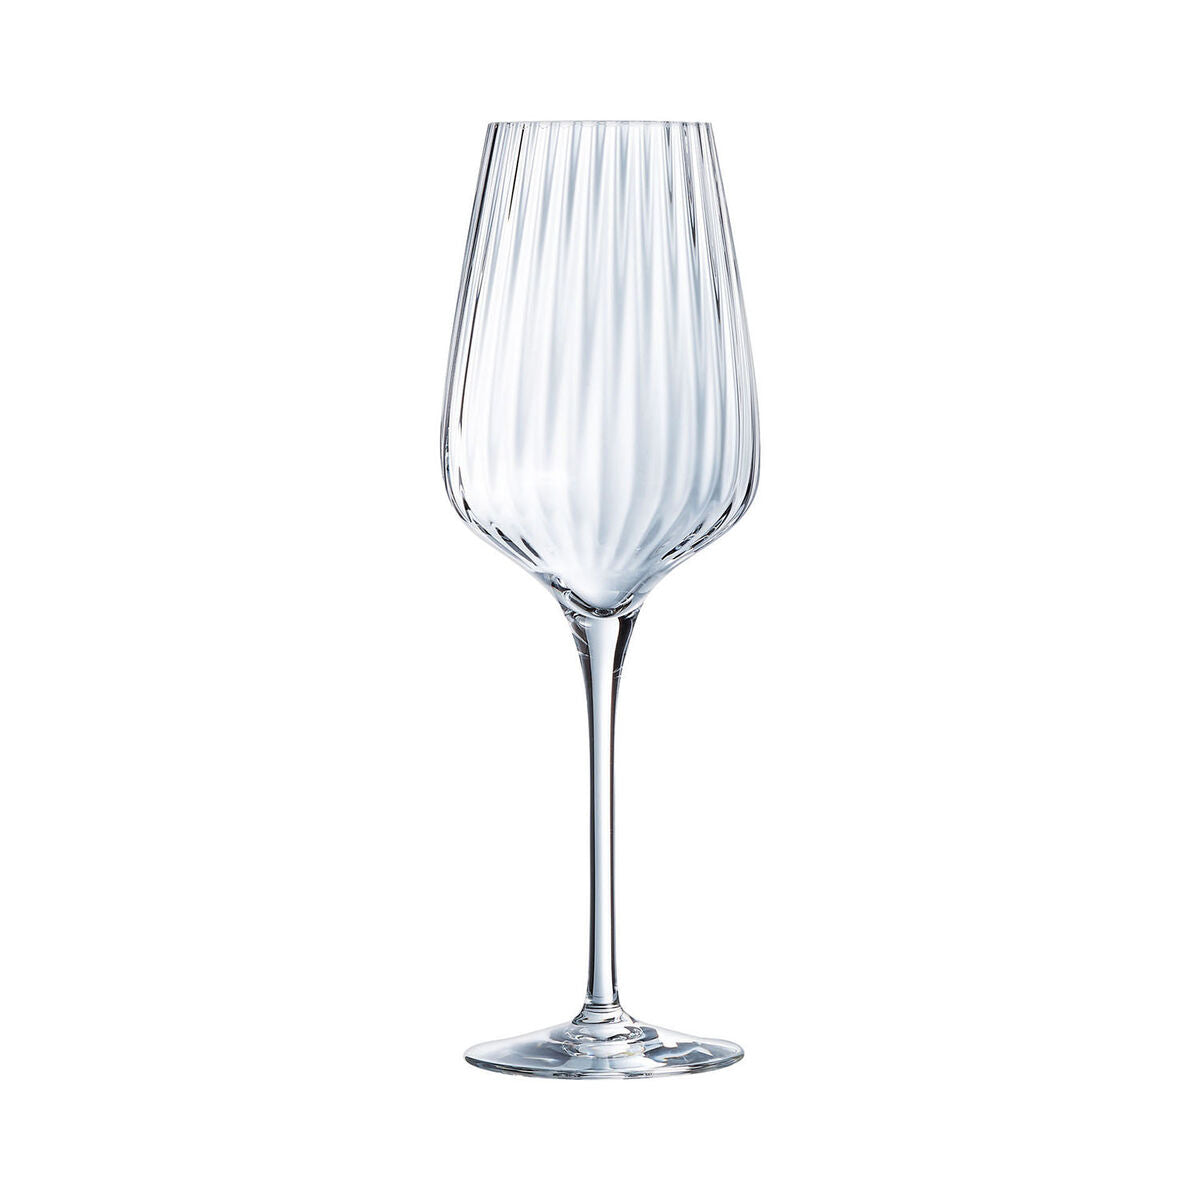 Gläsersatz Chef&Sommelier Symetrie Wein Durchsichtig Glas 550 ml (6 Stück)